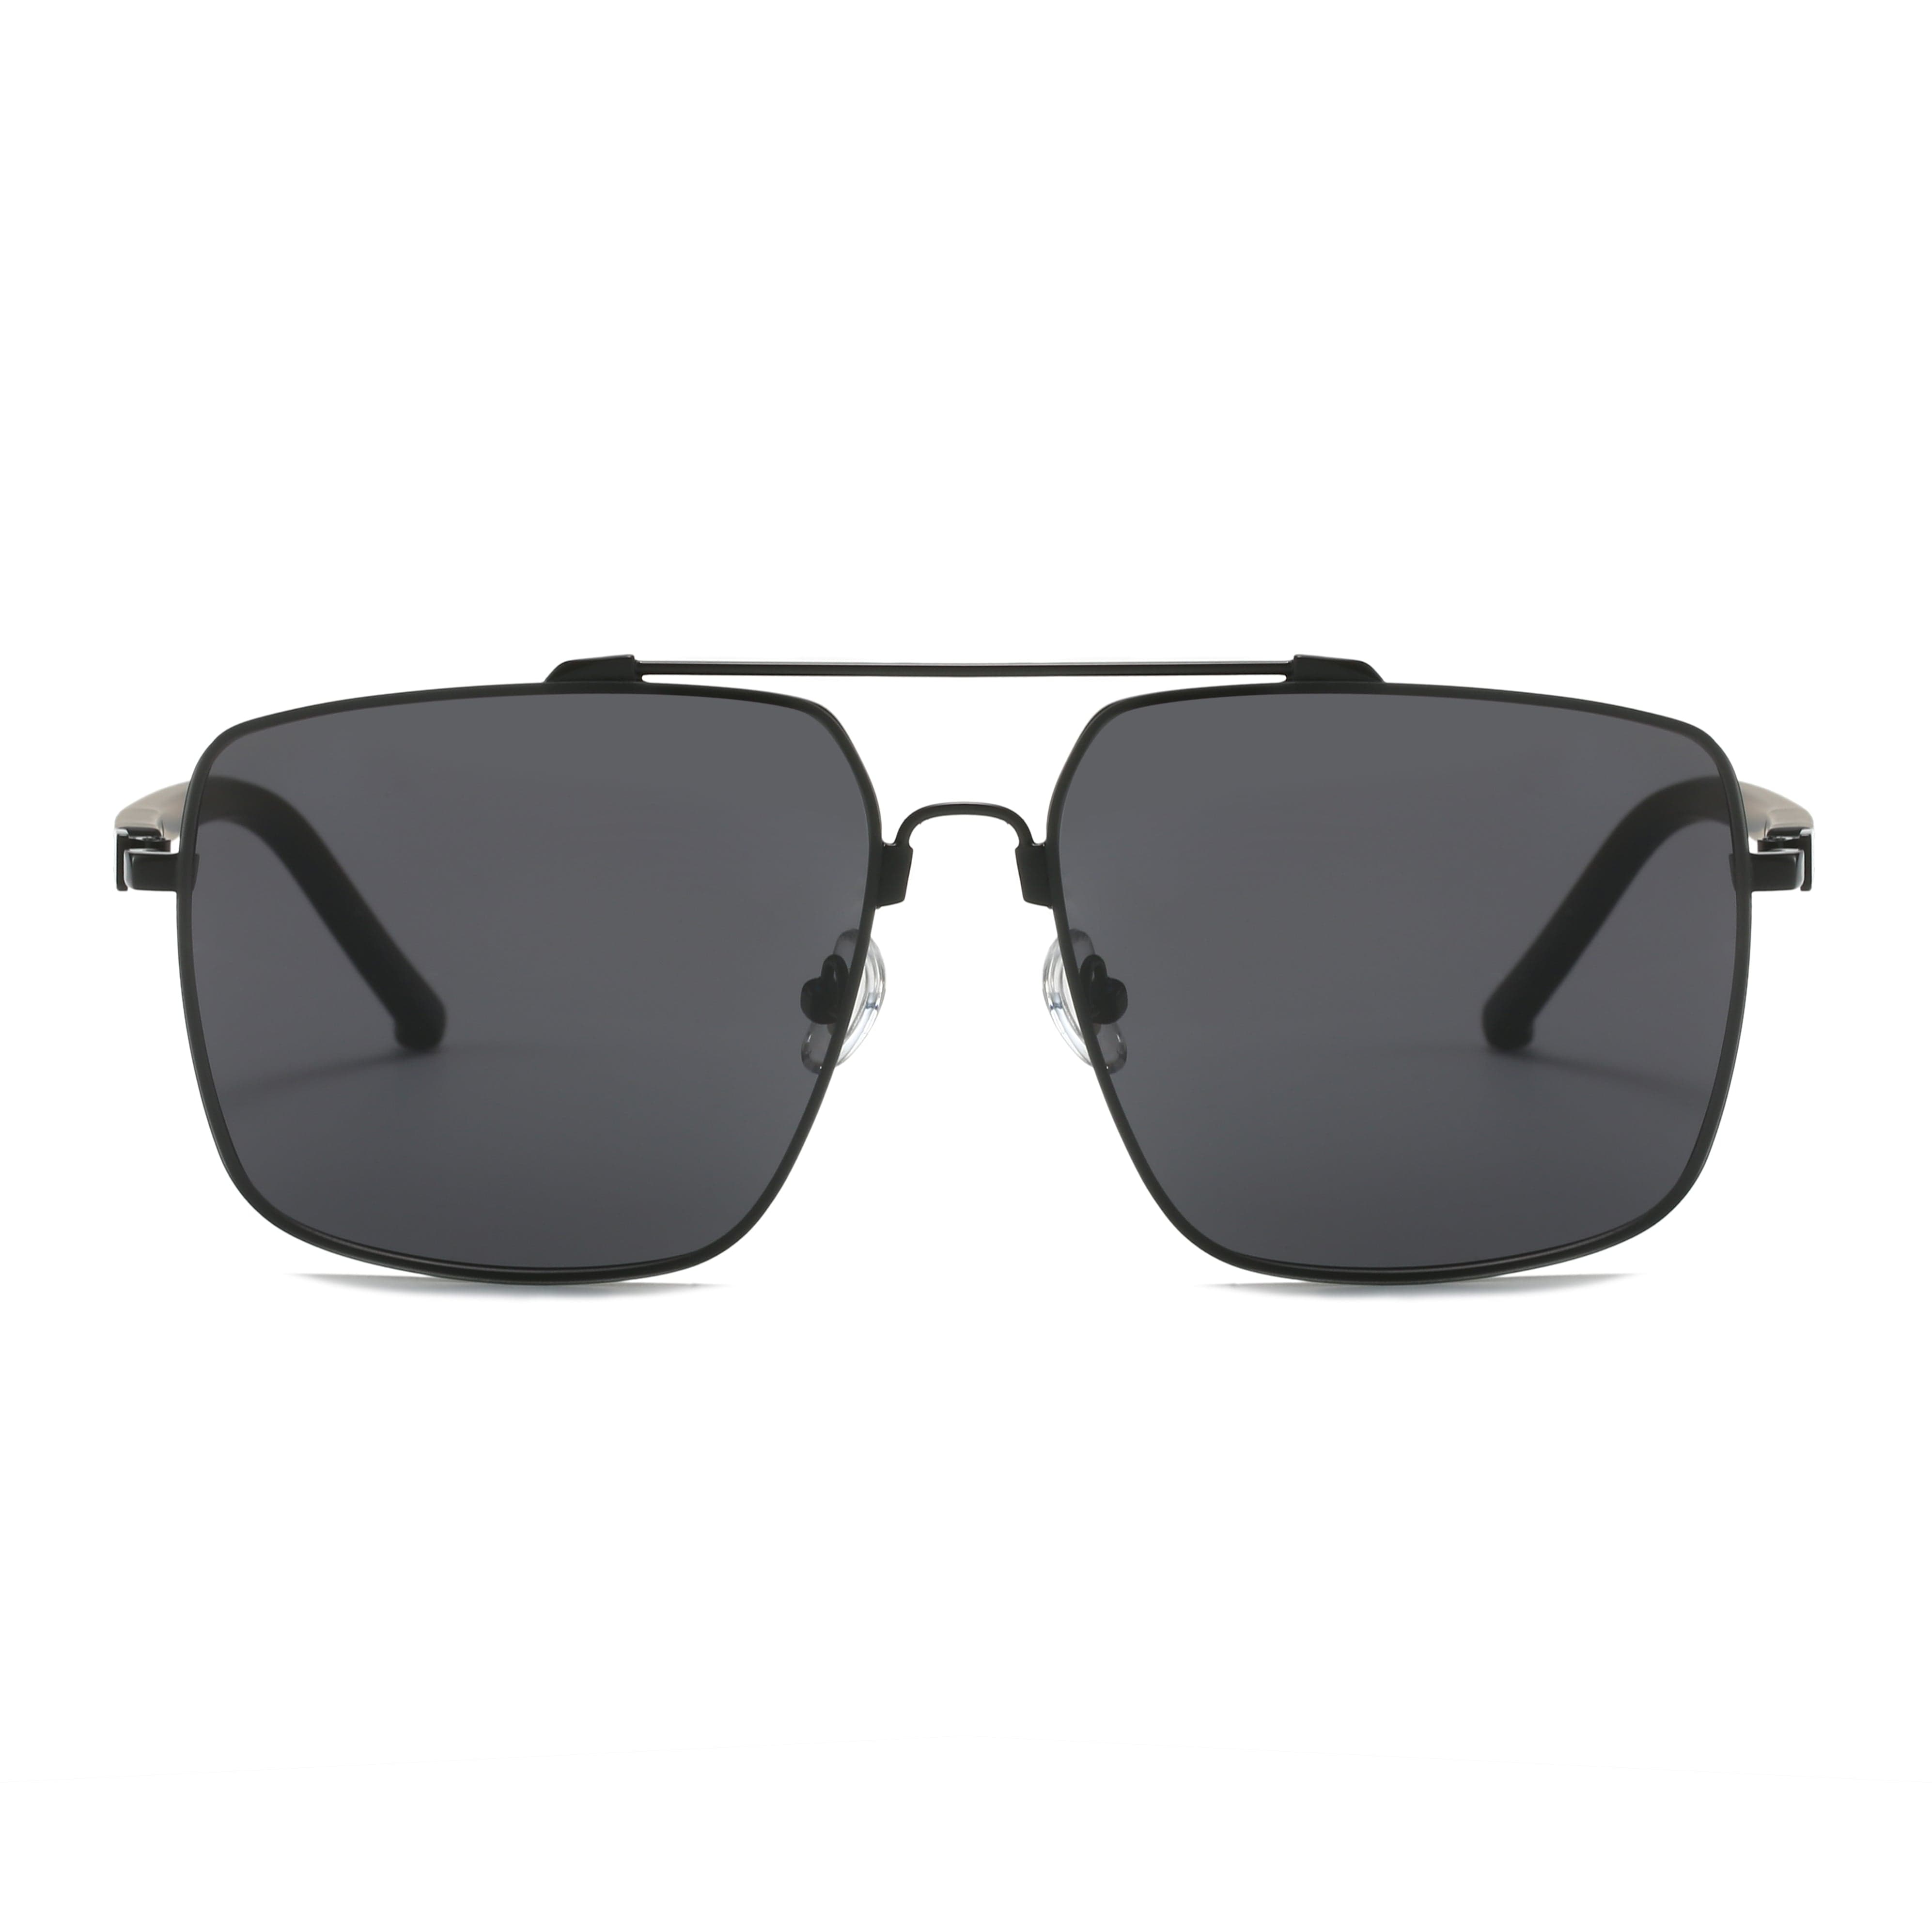 GIUSTIZIERI VECCHI Sunglasses Medium / Black Royal Regalia Uno